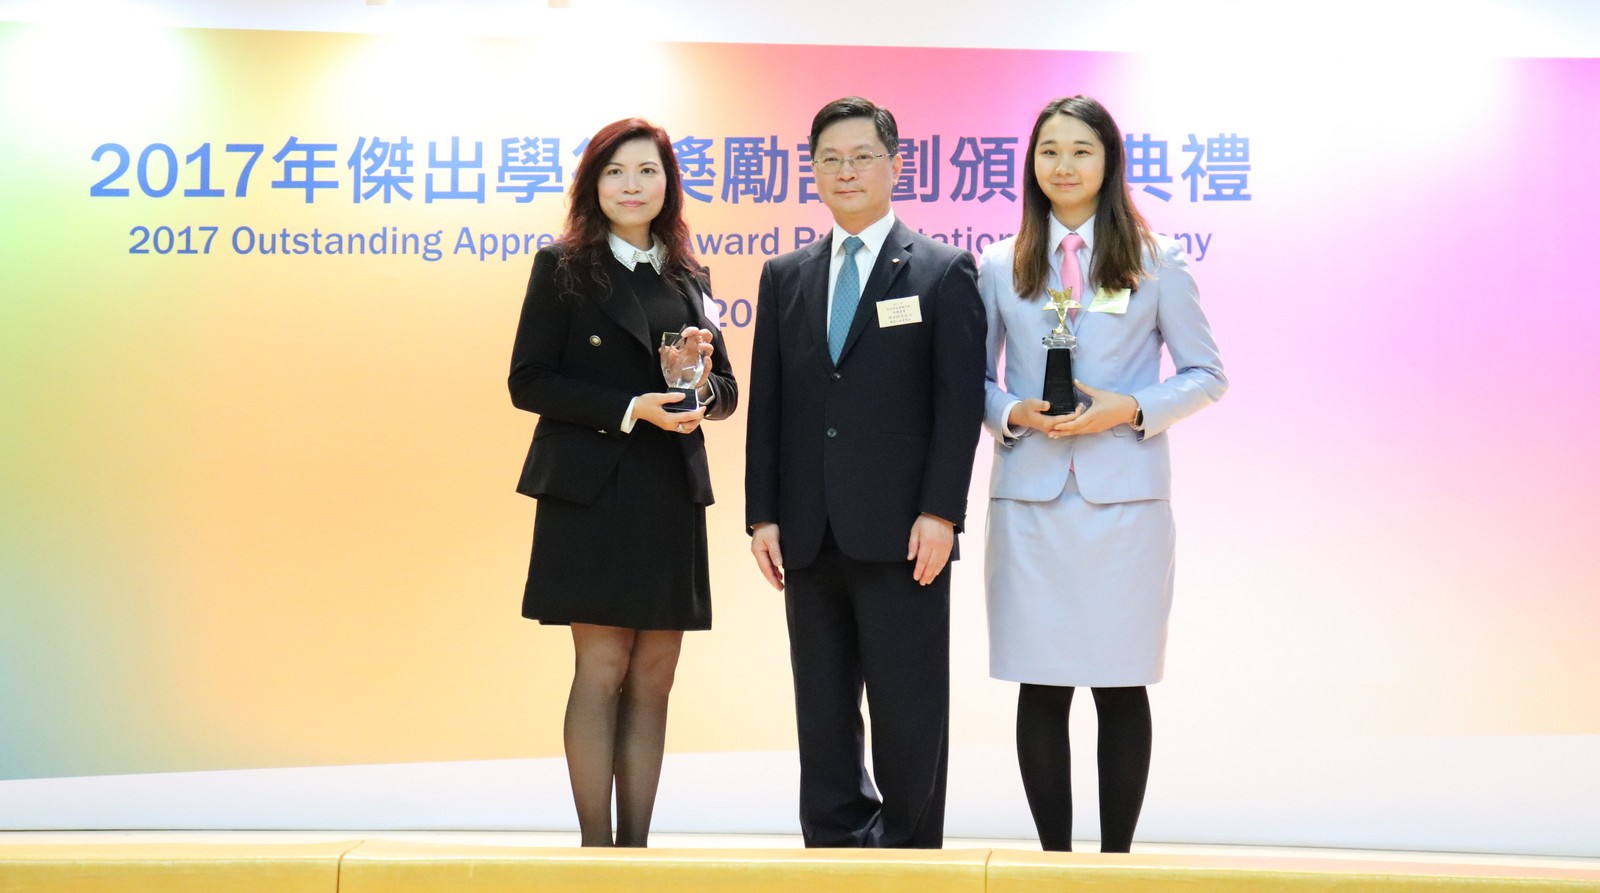 江咏仪小姐（右）是「2017年杰出学徒奖励计划」得奖者之一